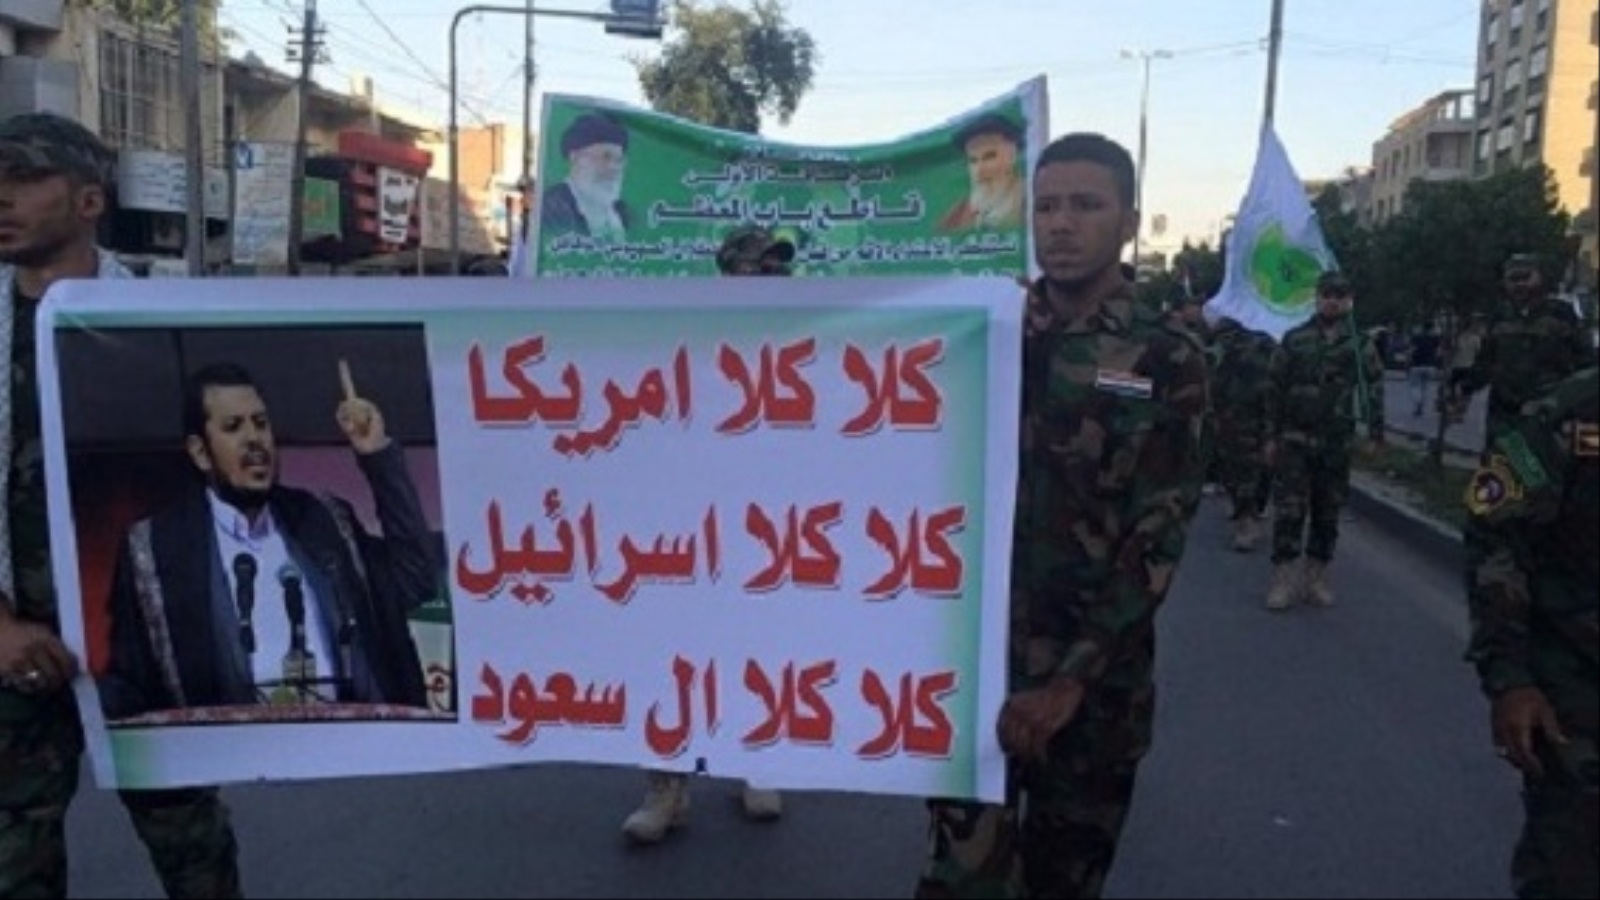 يتحدث مراقبون عن محاولة أحزاب وشخصيات سياسية شيعية عراقية دعم الحوثيين سرا (الجزيرة)